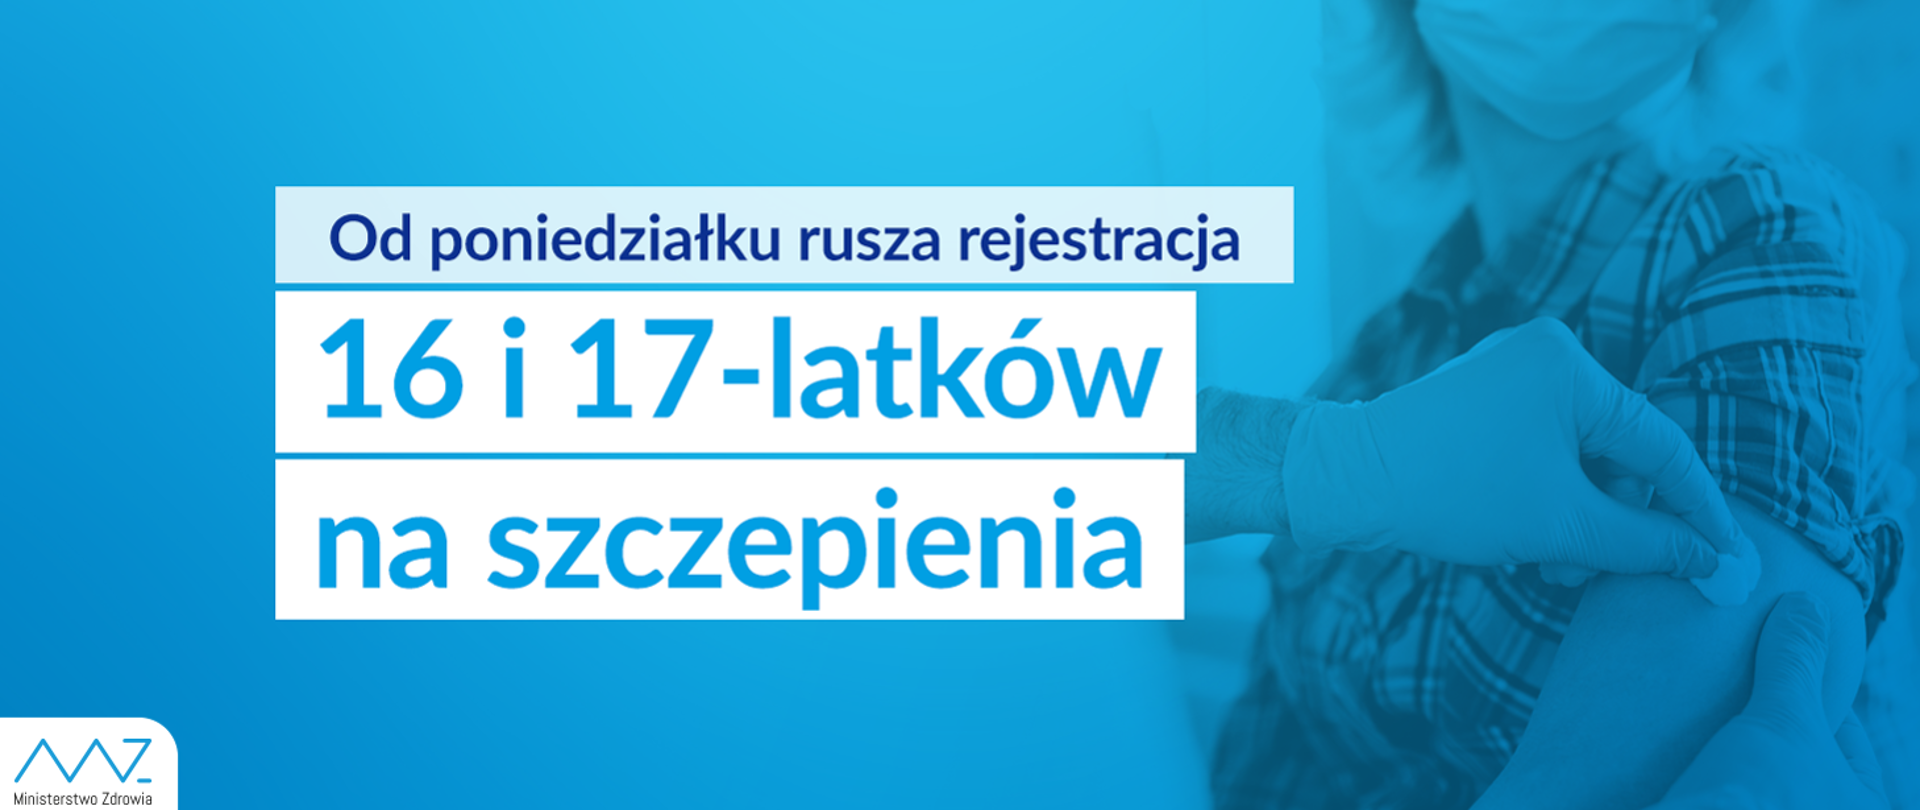 Grafika zawiera napis: Od poniedziałku rusza rejestracja 16 i 17-latków na szczepienia, który znajduje się na niebieskim tle. Tło przedstawia szczepienie pacjenta przez medyka. W lewym dolnym rogu znajduje się logo Ministerstwa Zdrowia.